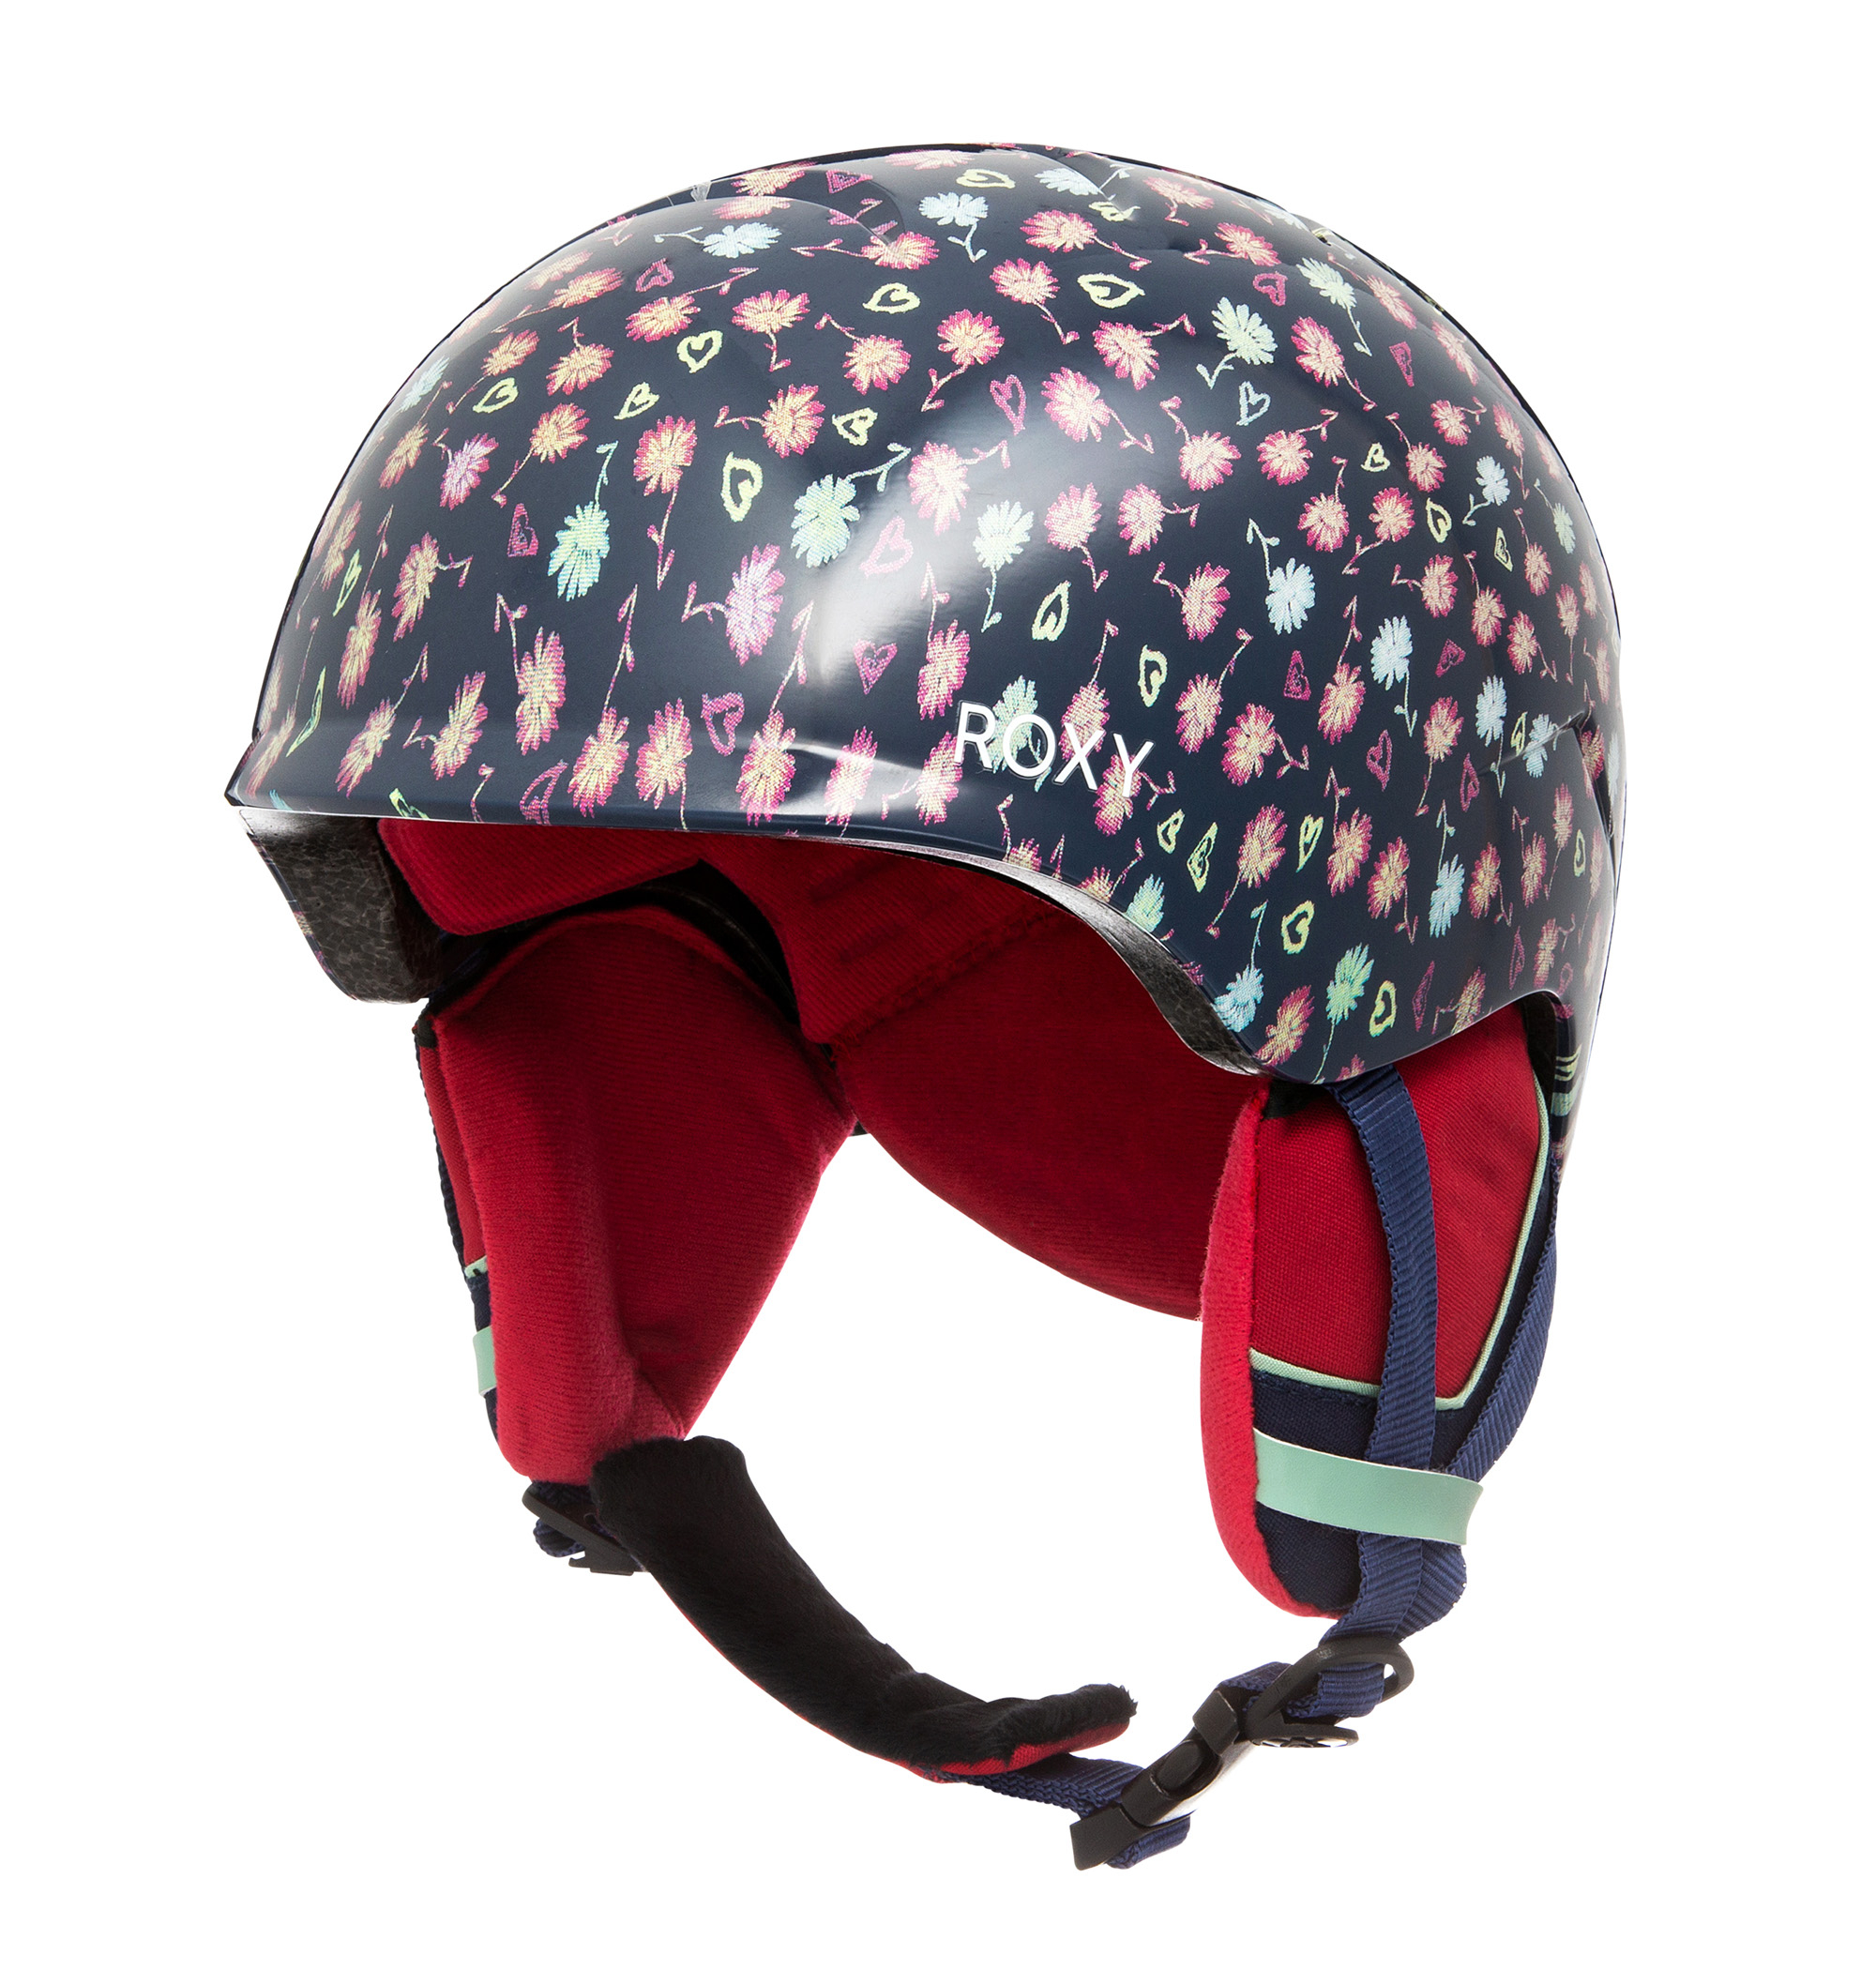 30%OFF！SLUSH GIRL 長時間の着用でも疲れにくい軽量インモールド構造のヘルメットの大画像